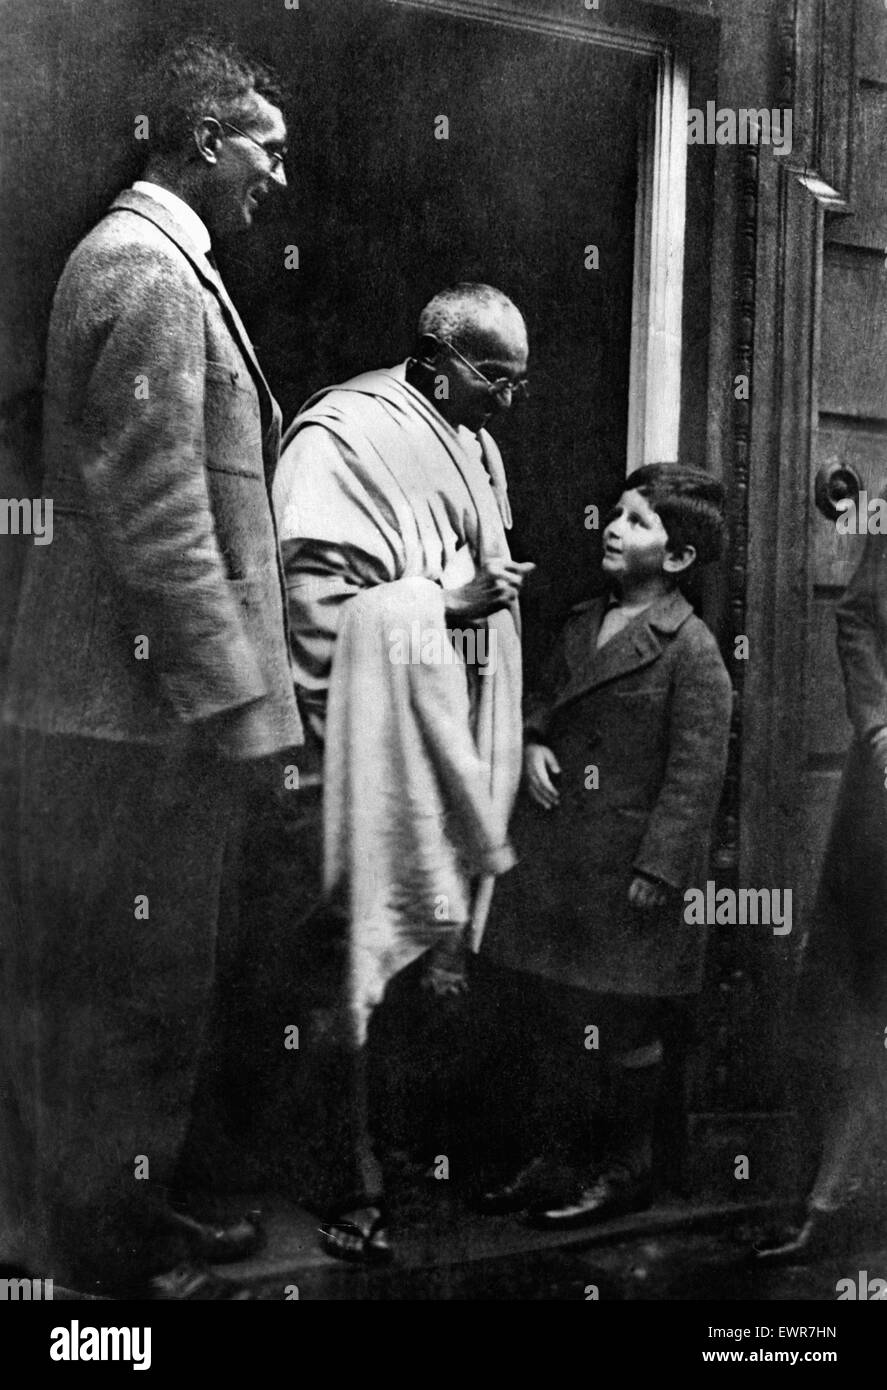 'Mahatma' Mohandas Gandhi, chef du mouvement pour l'indépendance de l'Inde britannique en Inde sous domination, photographié au cours de sa visite en Grande-Bretagne en 1931. On le voit ici avec M. J S Hoyland et son fils à Woodbrooke College de Selly Oak lors de sa visite à Birming Banque D'Images